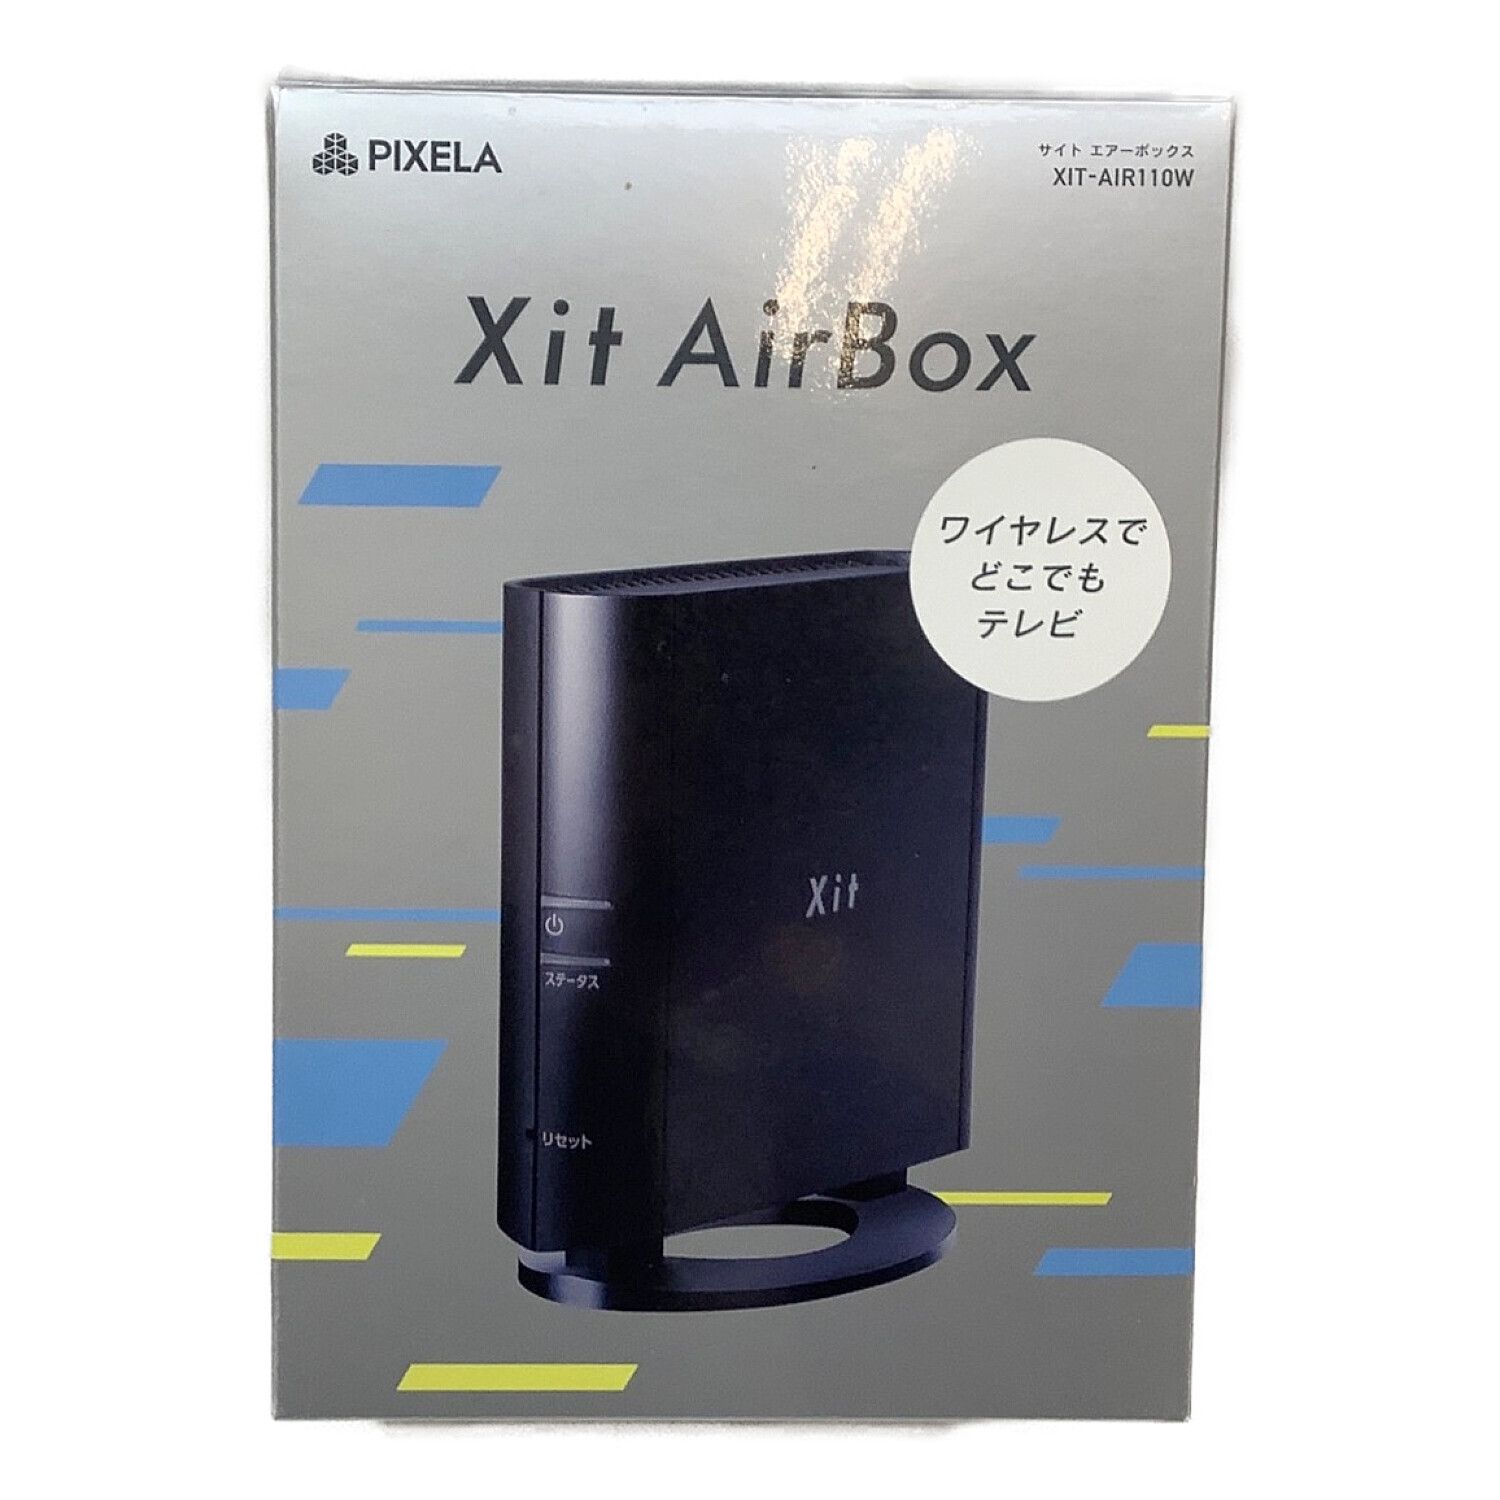 新品未使用・ピクセラ Xit AirBox XIT-AIR110W